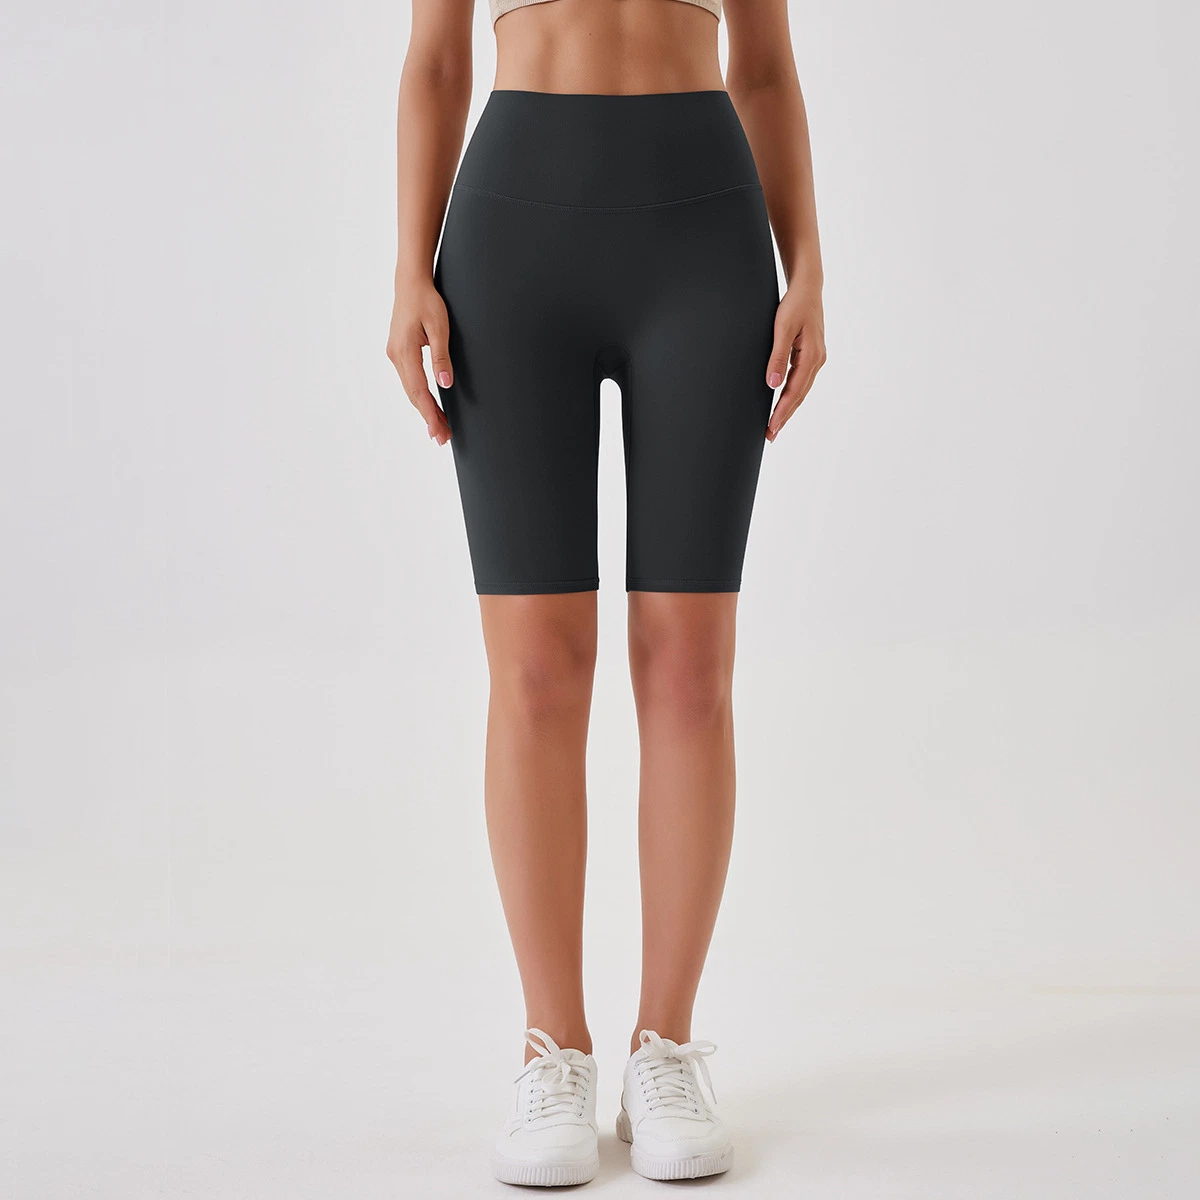 La buena costumbre de venta suave transpirable nylon sólido Fitness Deportes de cintura alta Yoga Entrenamiento Shorts Shorts mujer ciclista Shorts pantalones